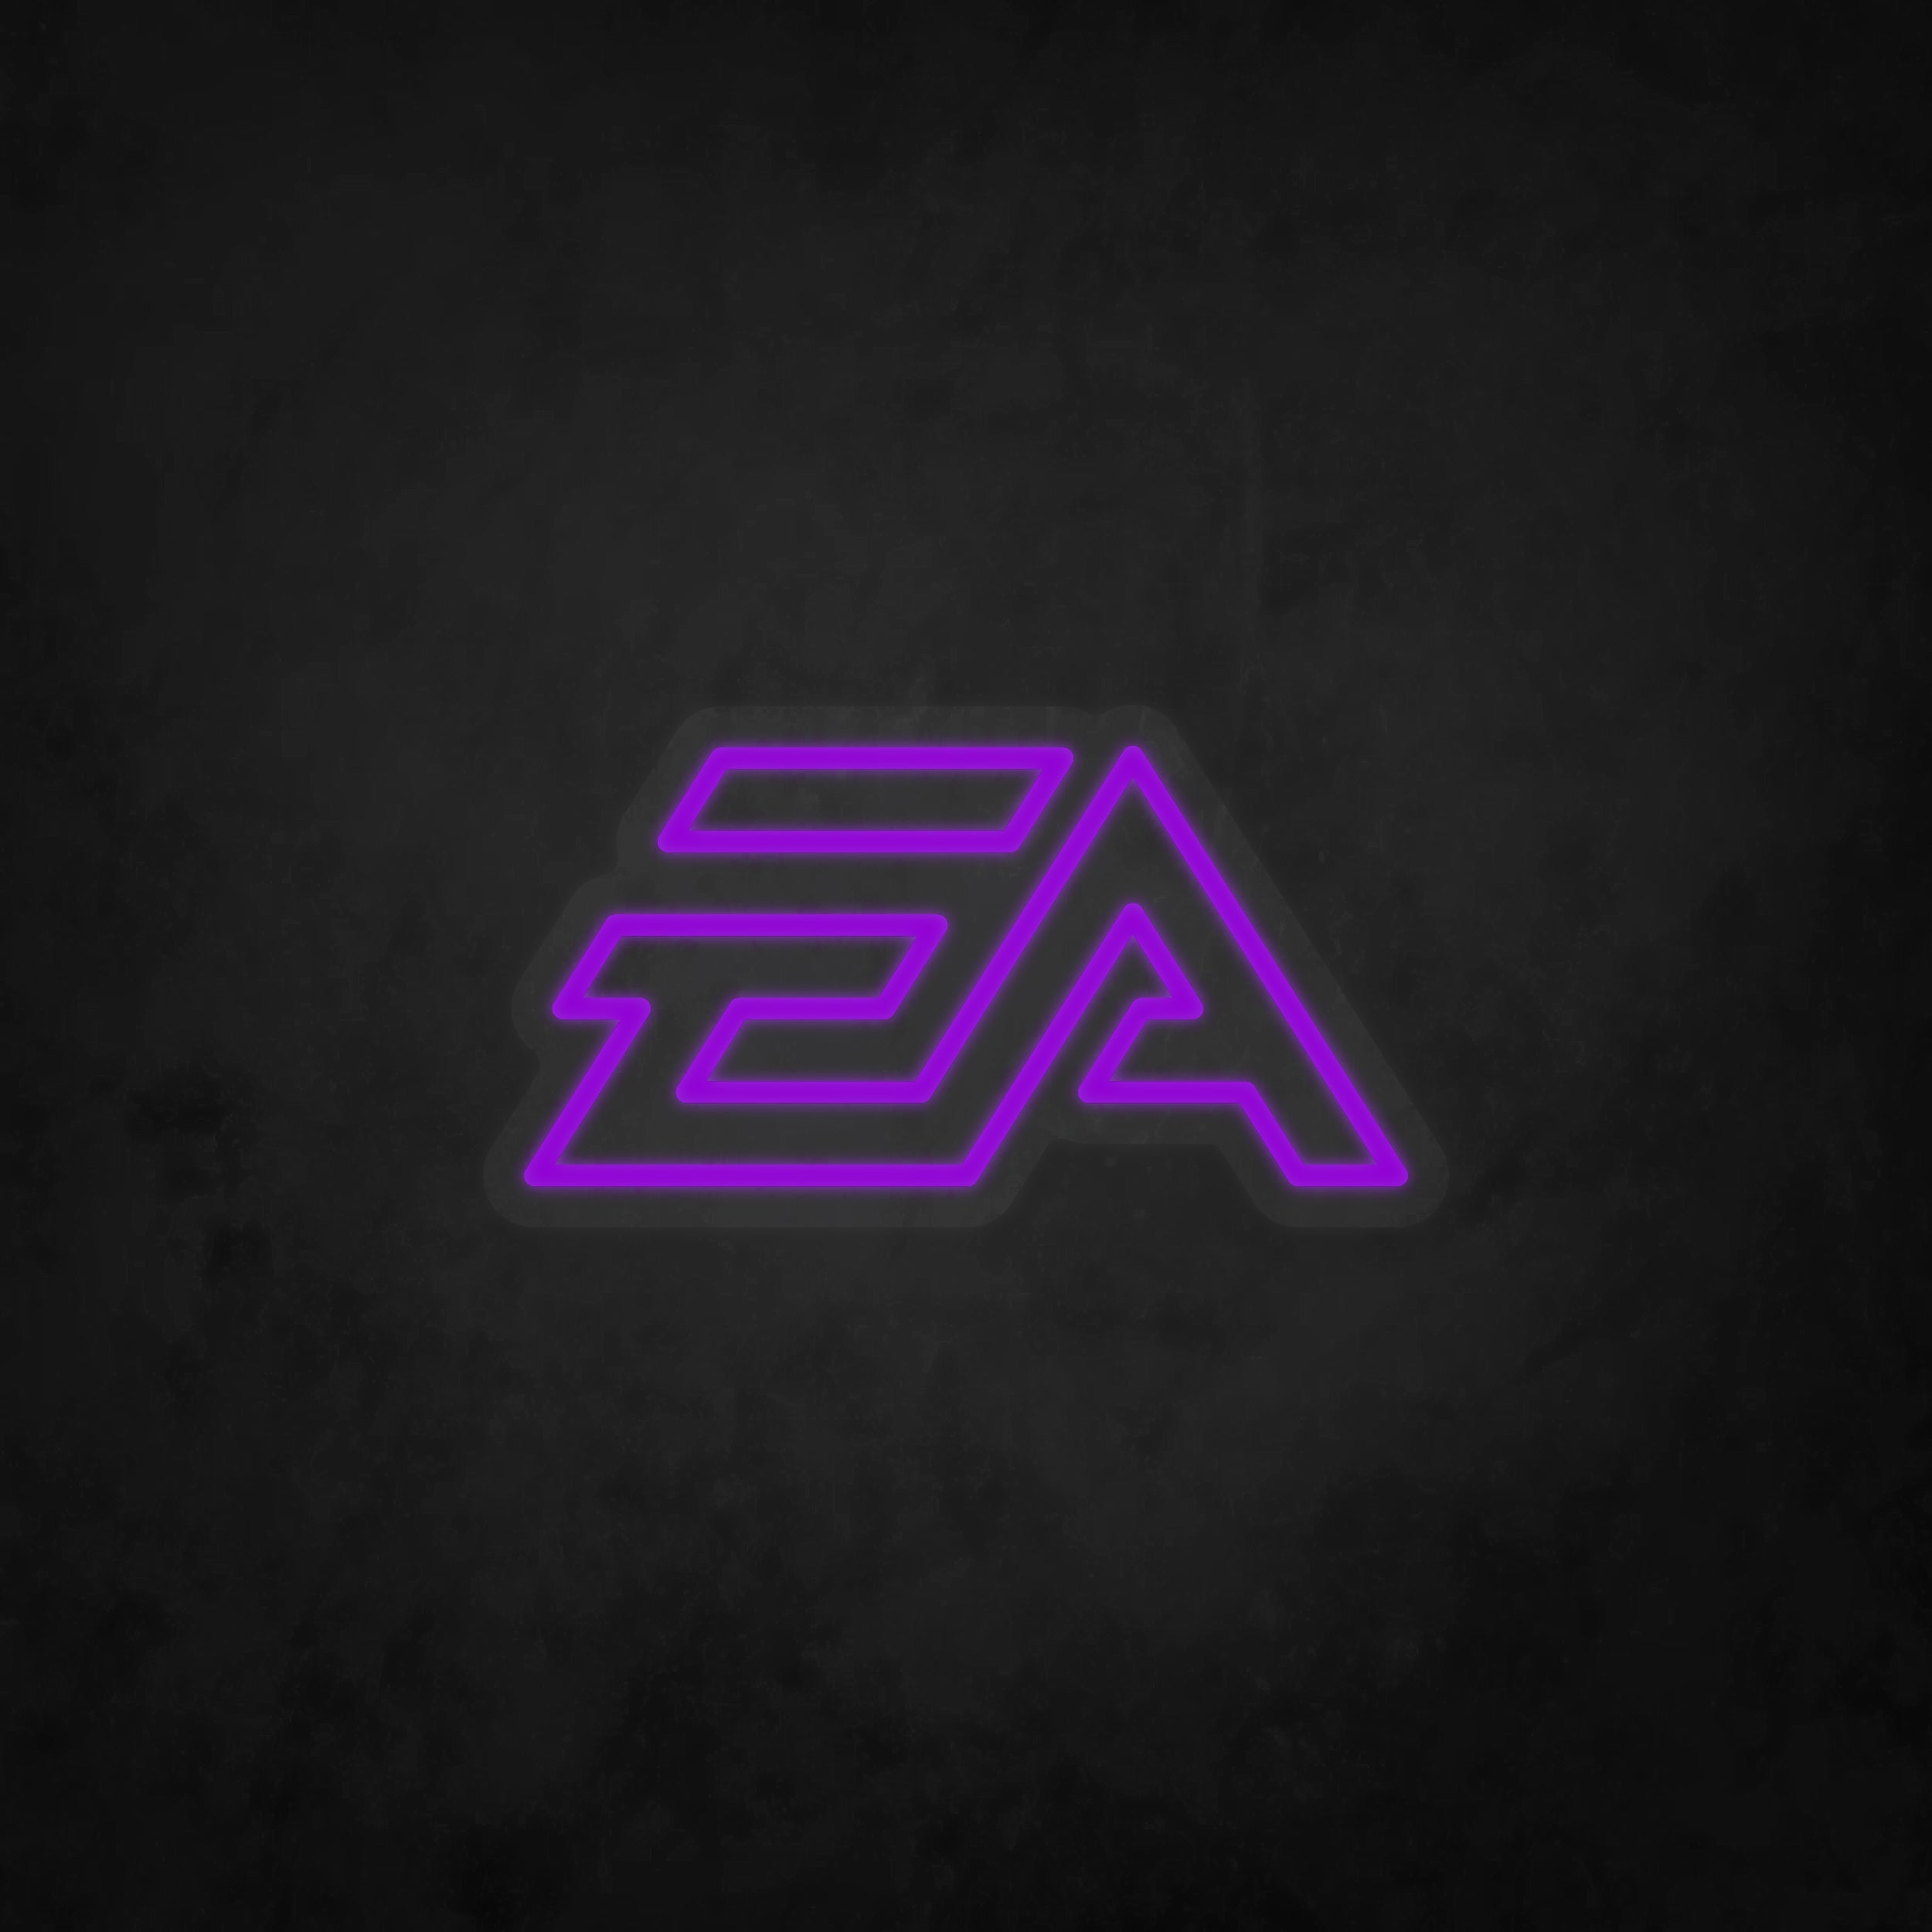 LED Neon Sign - EA Logo